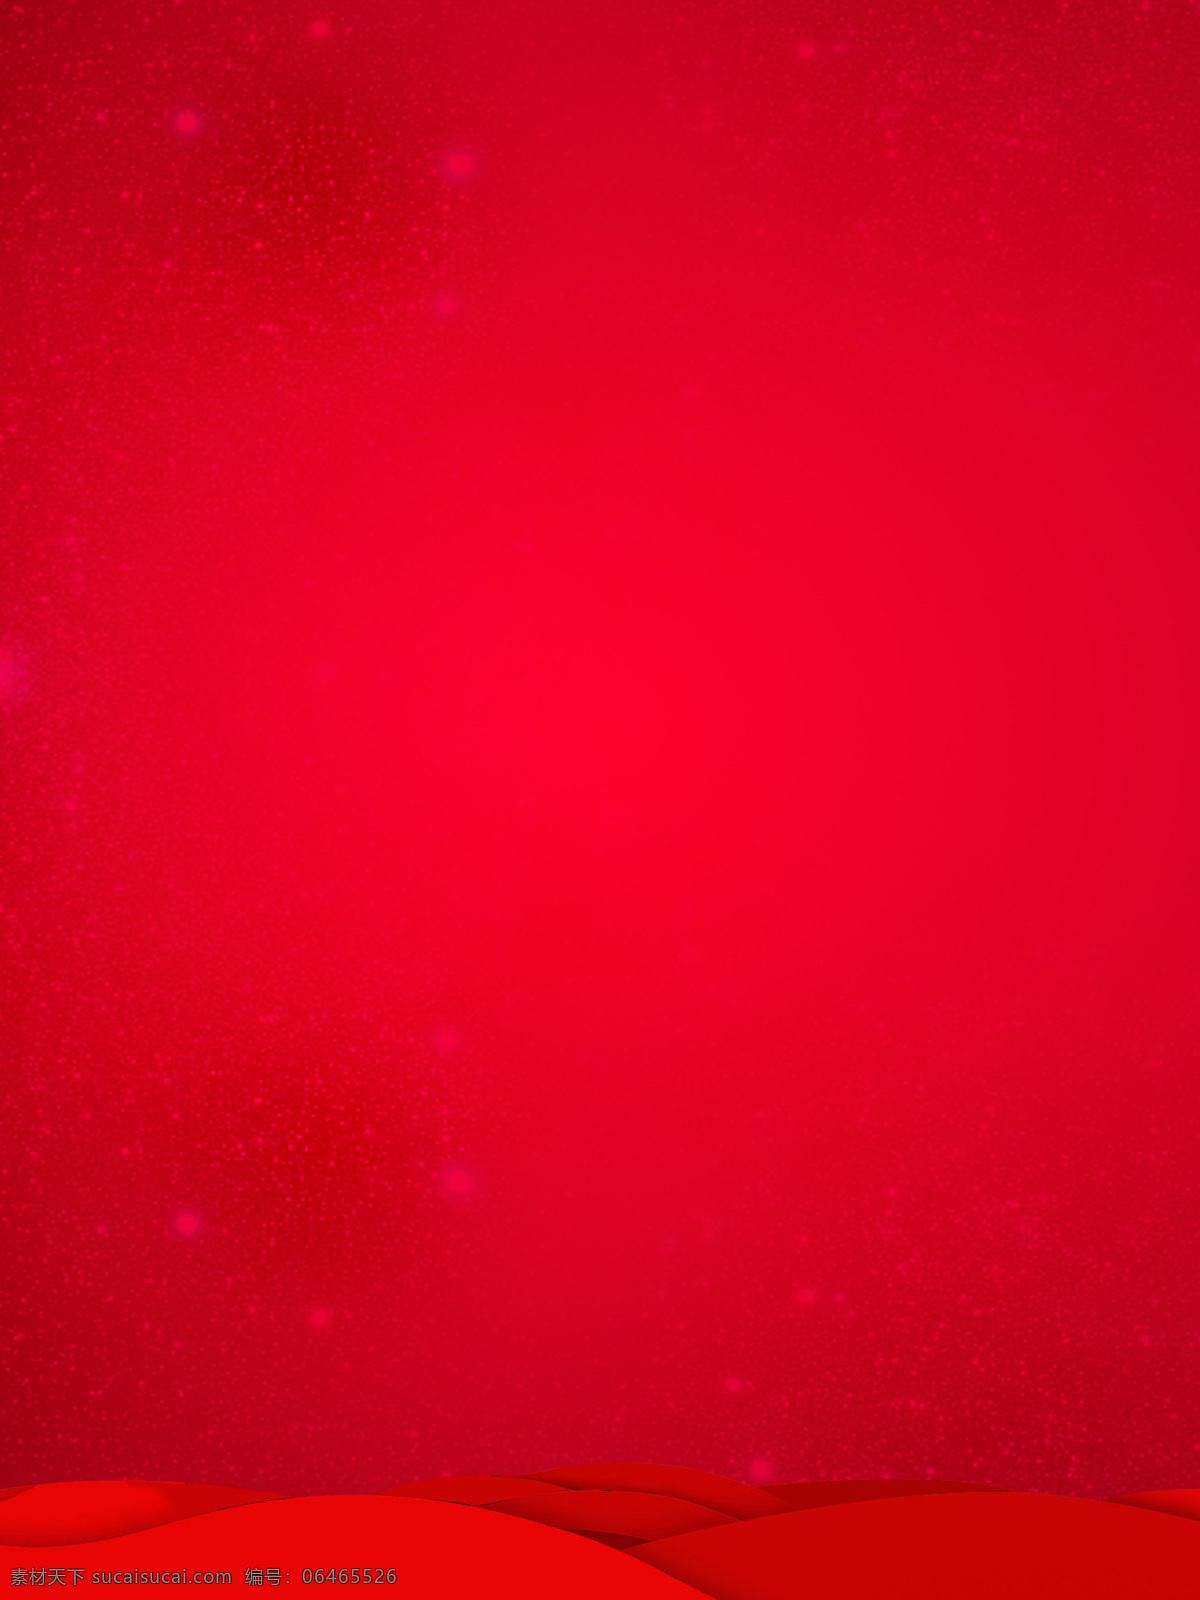 红色背景图片 红色背景 红色 喜庆 喜庆背庆 活动背景 红色主题 红色素材 抠图 矢量 底纹边框 其他素材